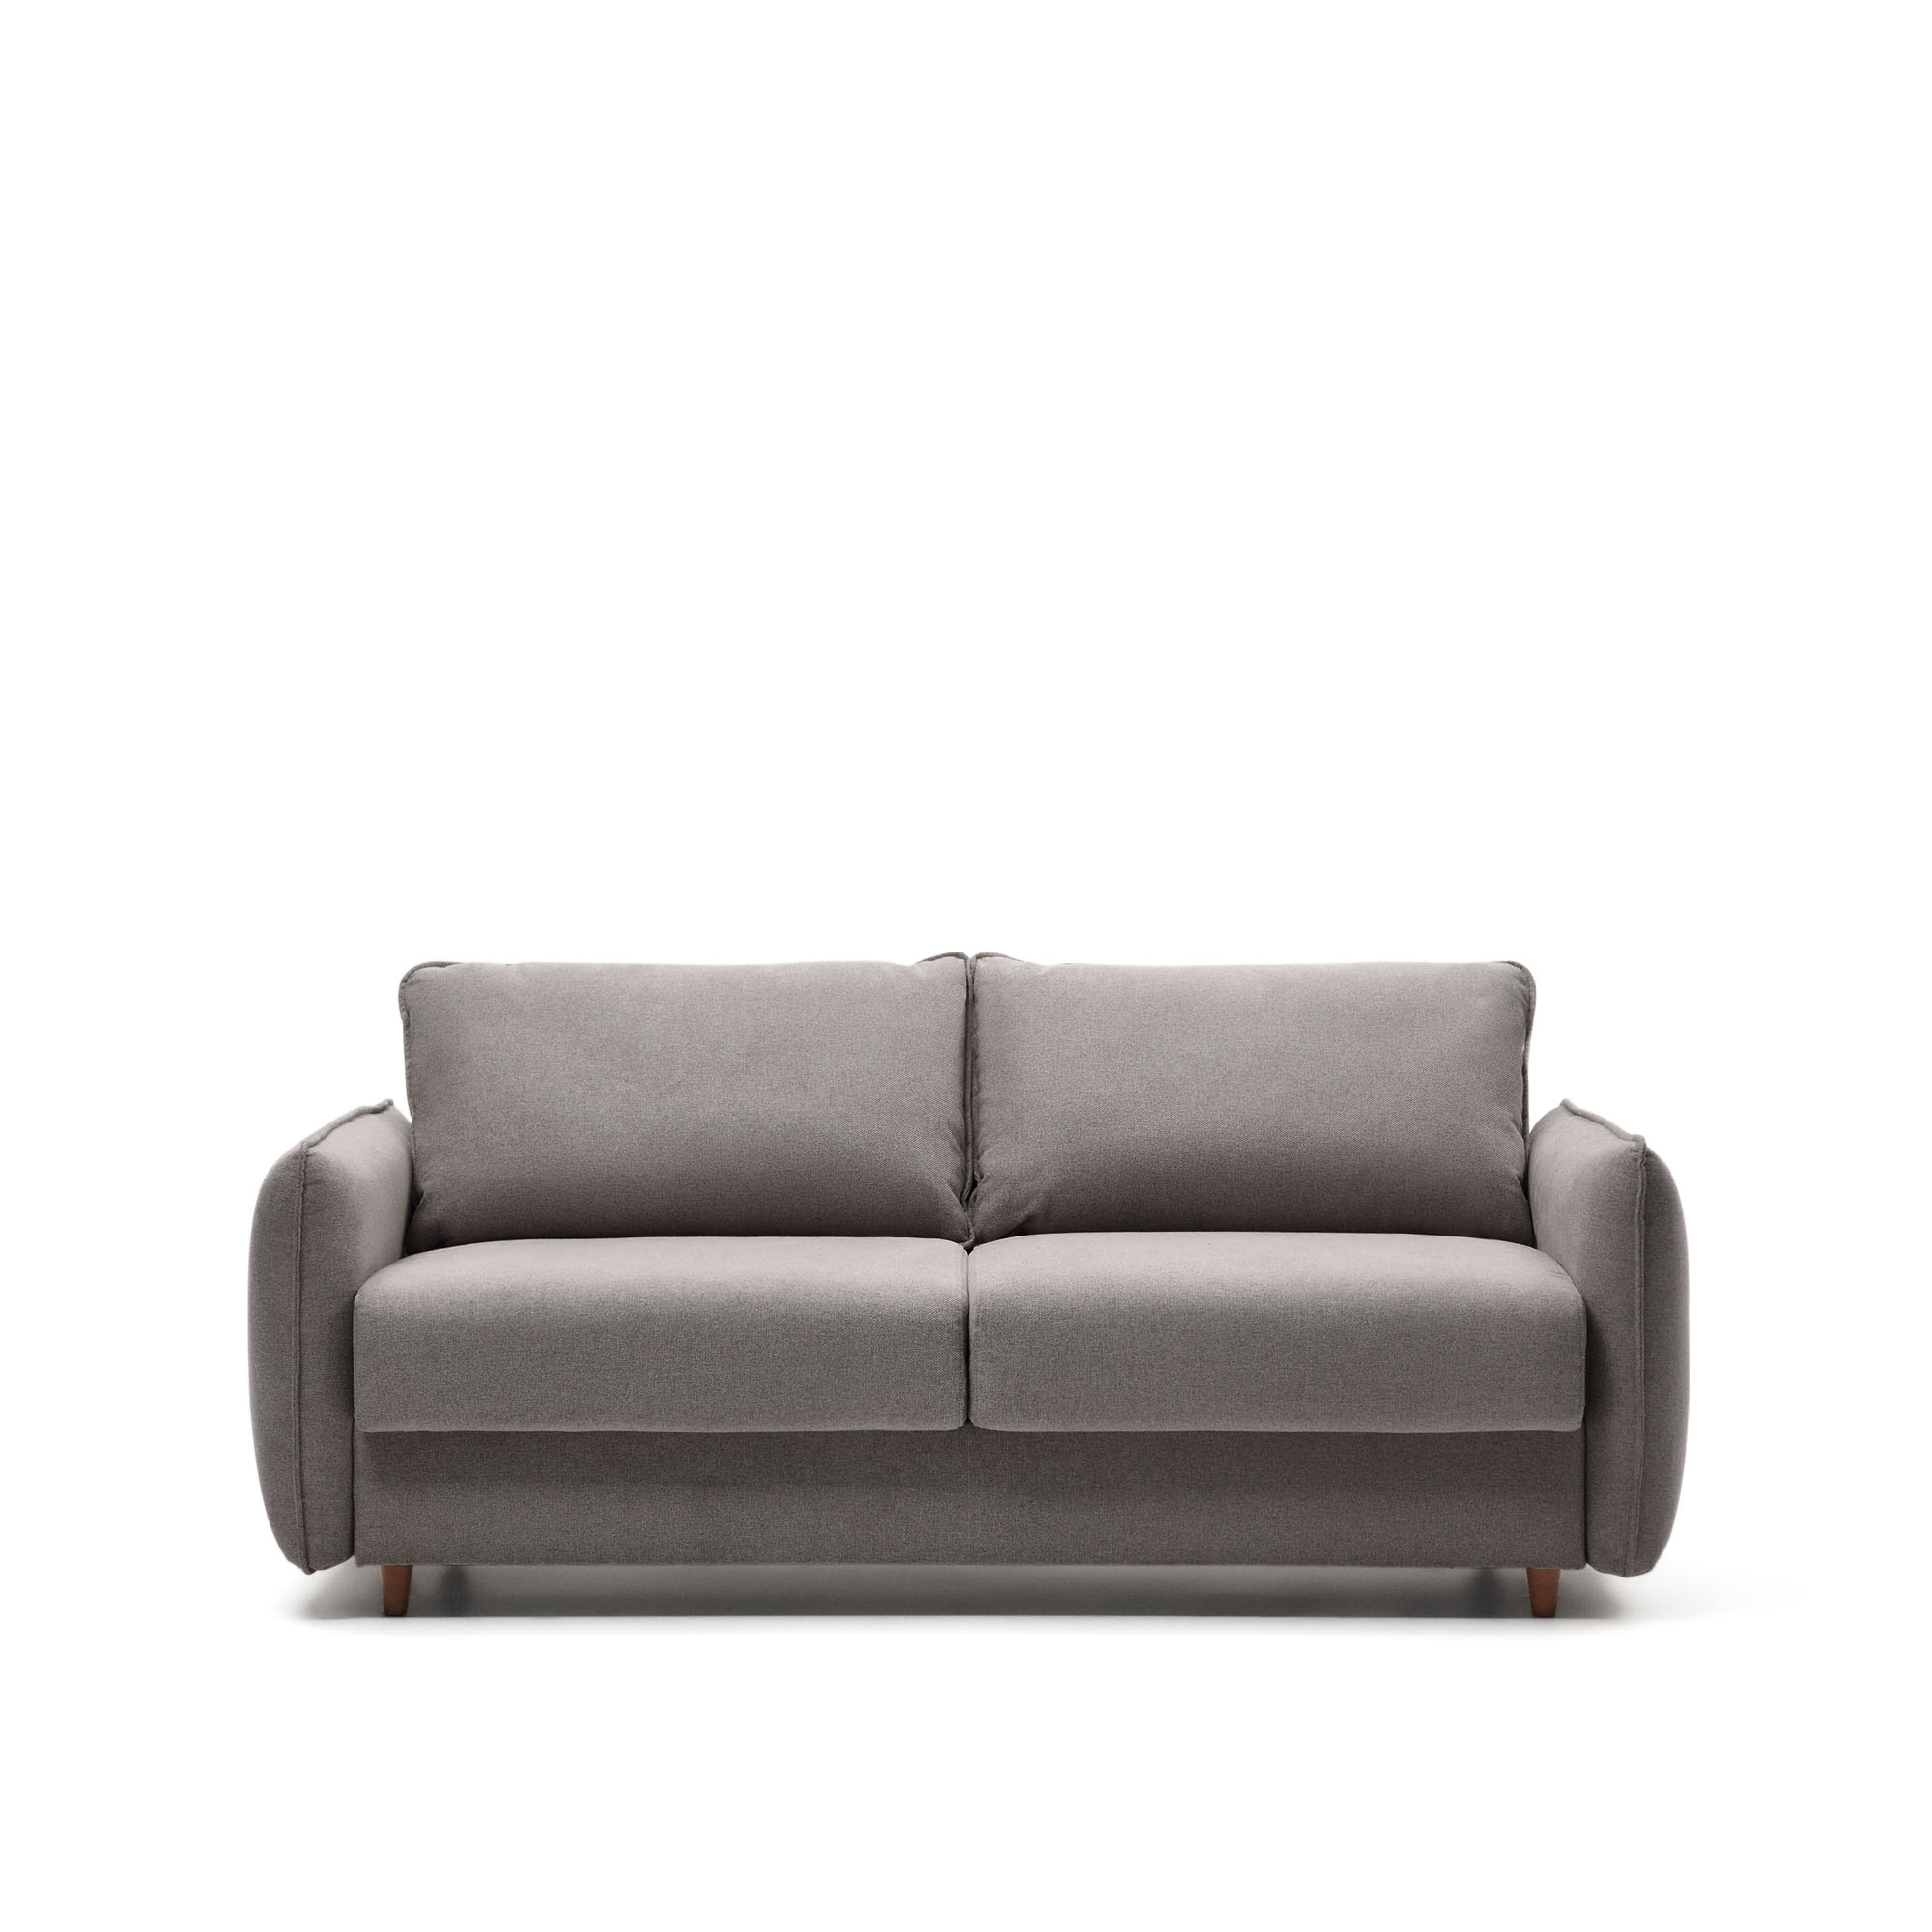 Carlota 2-местный диван-кровать из синели серого цвета